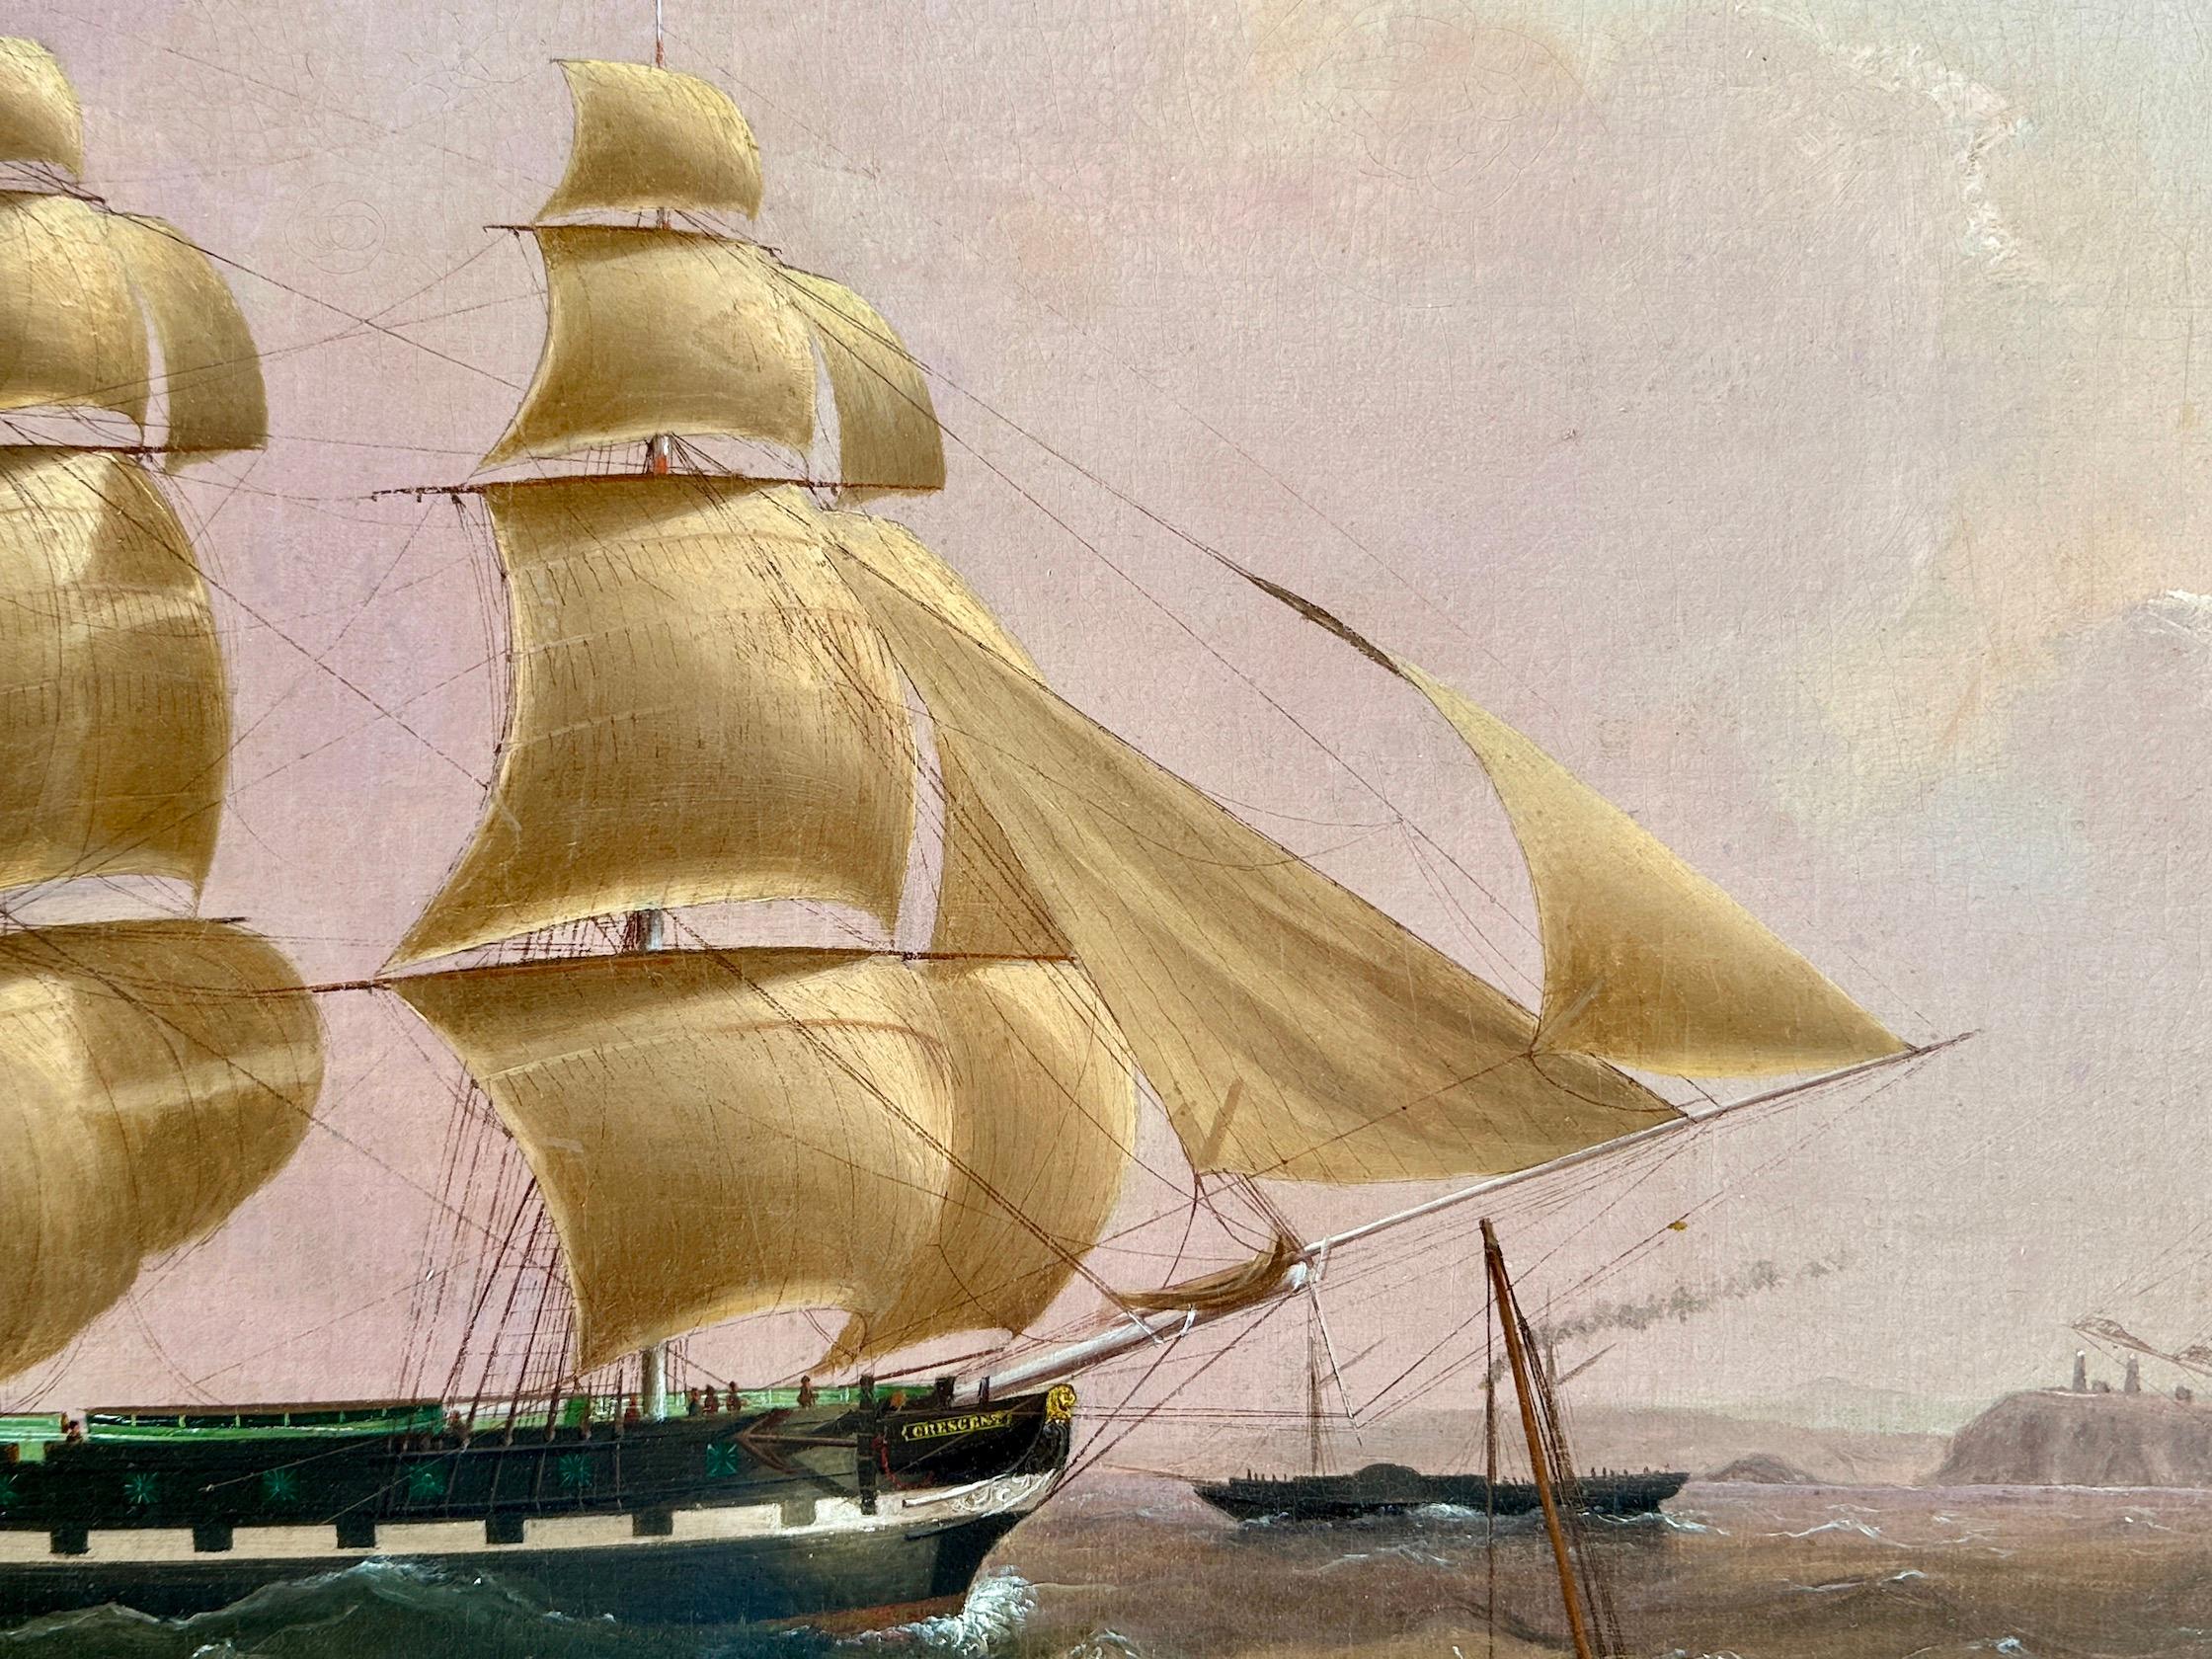 Englisches Porträt des Klipperschiffs Crescent aus dem 19. Jahrhundert in voller Fahrt.

Der Erwerb eines englischen Porträts eines Klipperschiffs aus dem 19. Jahrhundert ist mehr als nur ein Gemälde für Ihre Sammlung; es ist eine Einladung zu einer